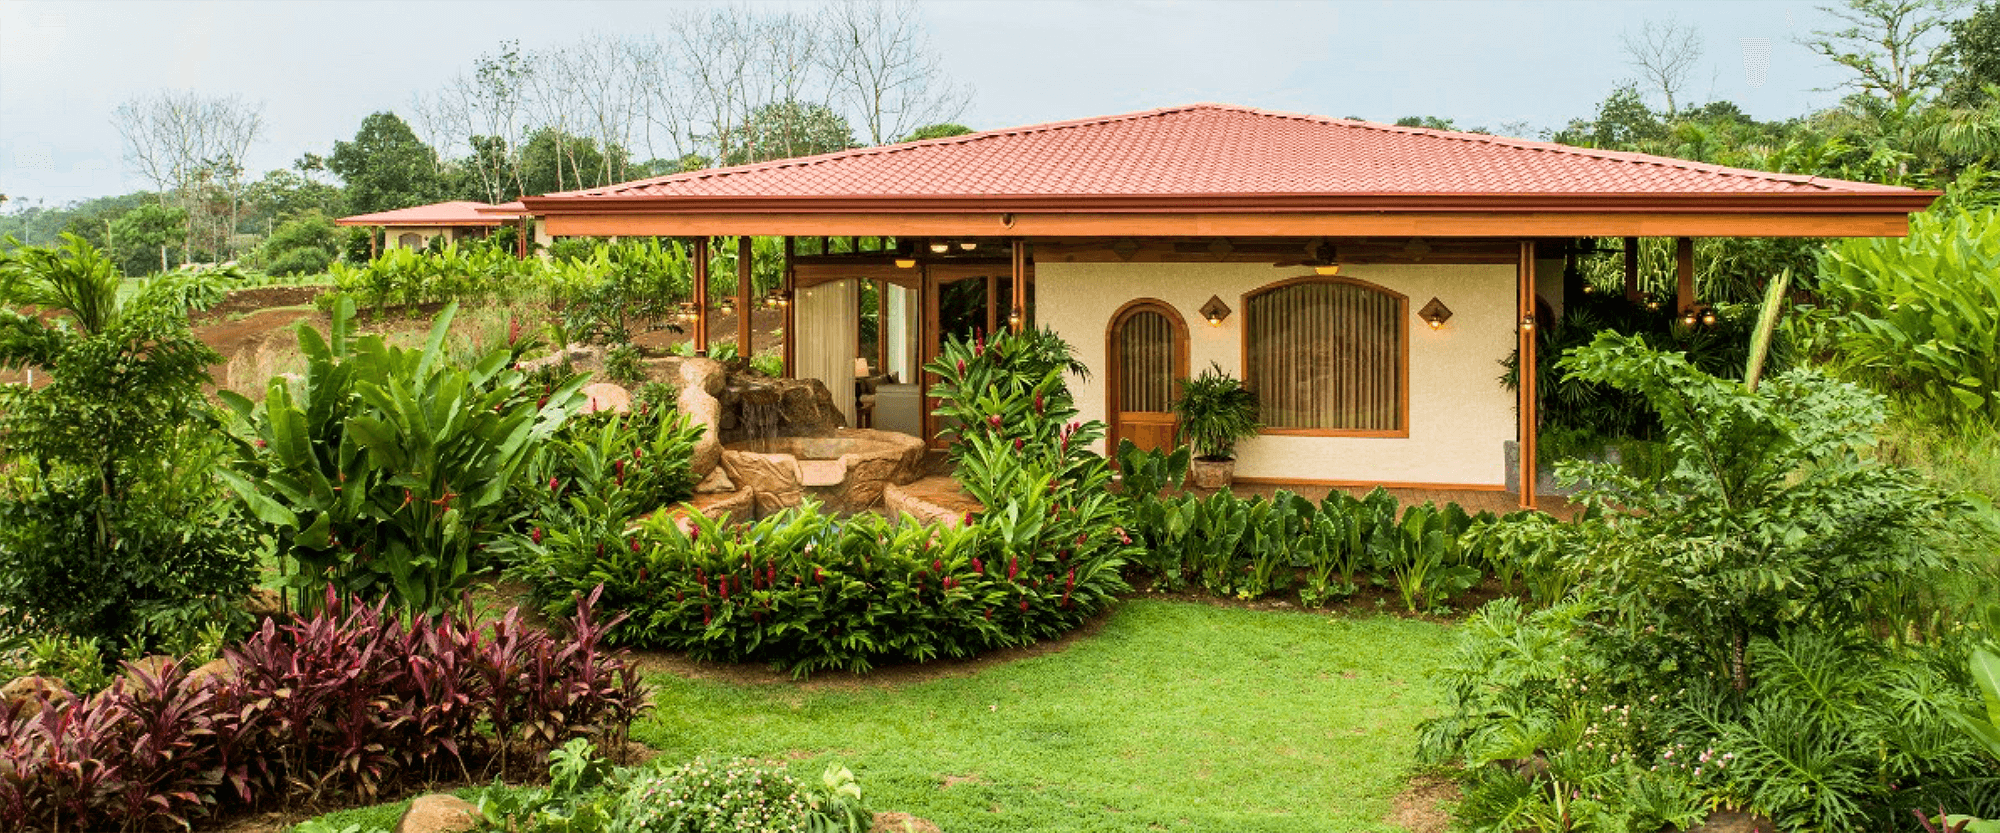 Villa Ramirez - Carousel